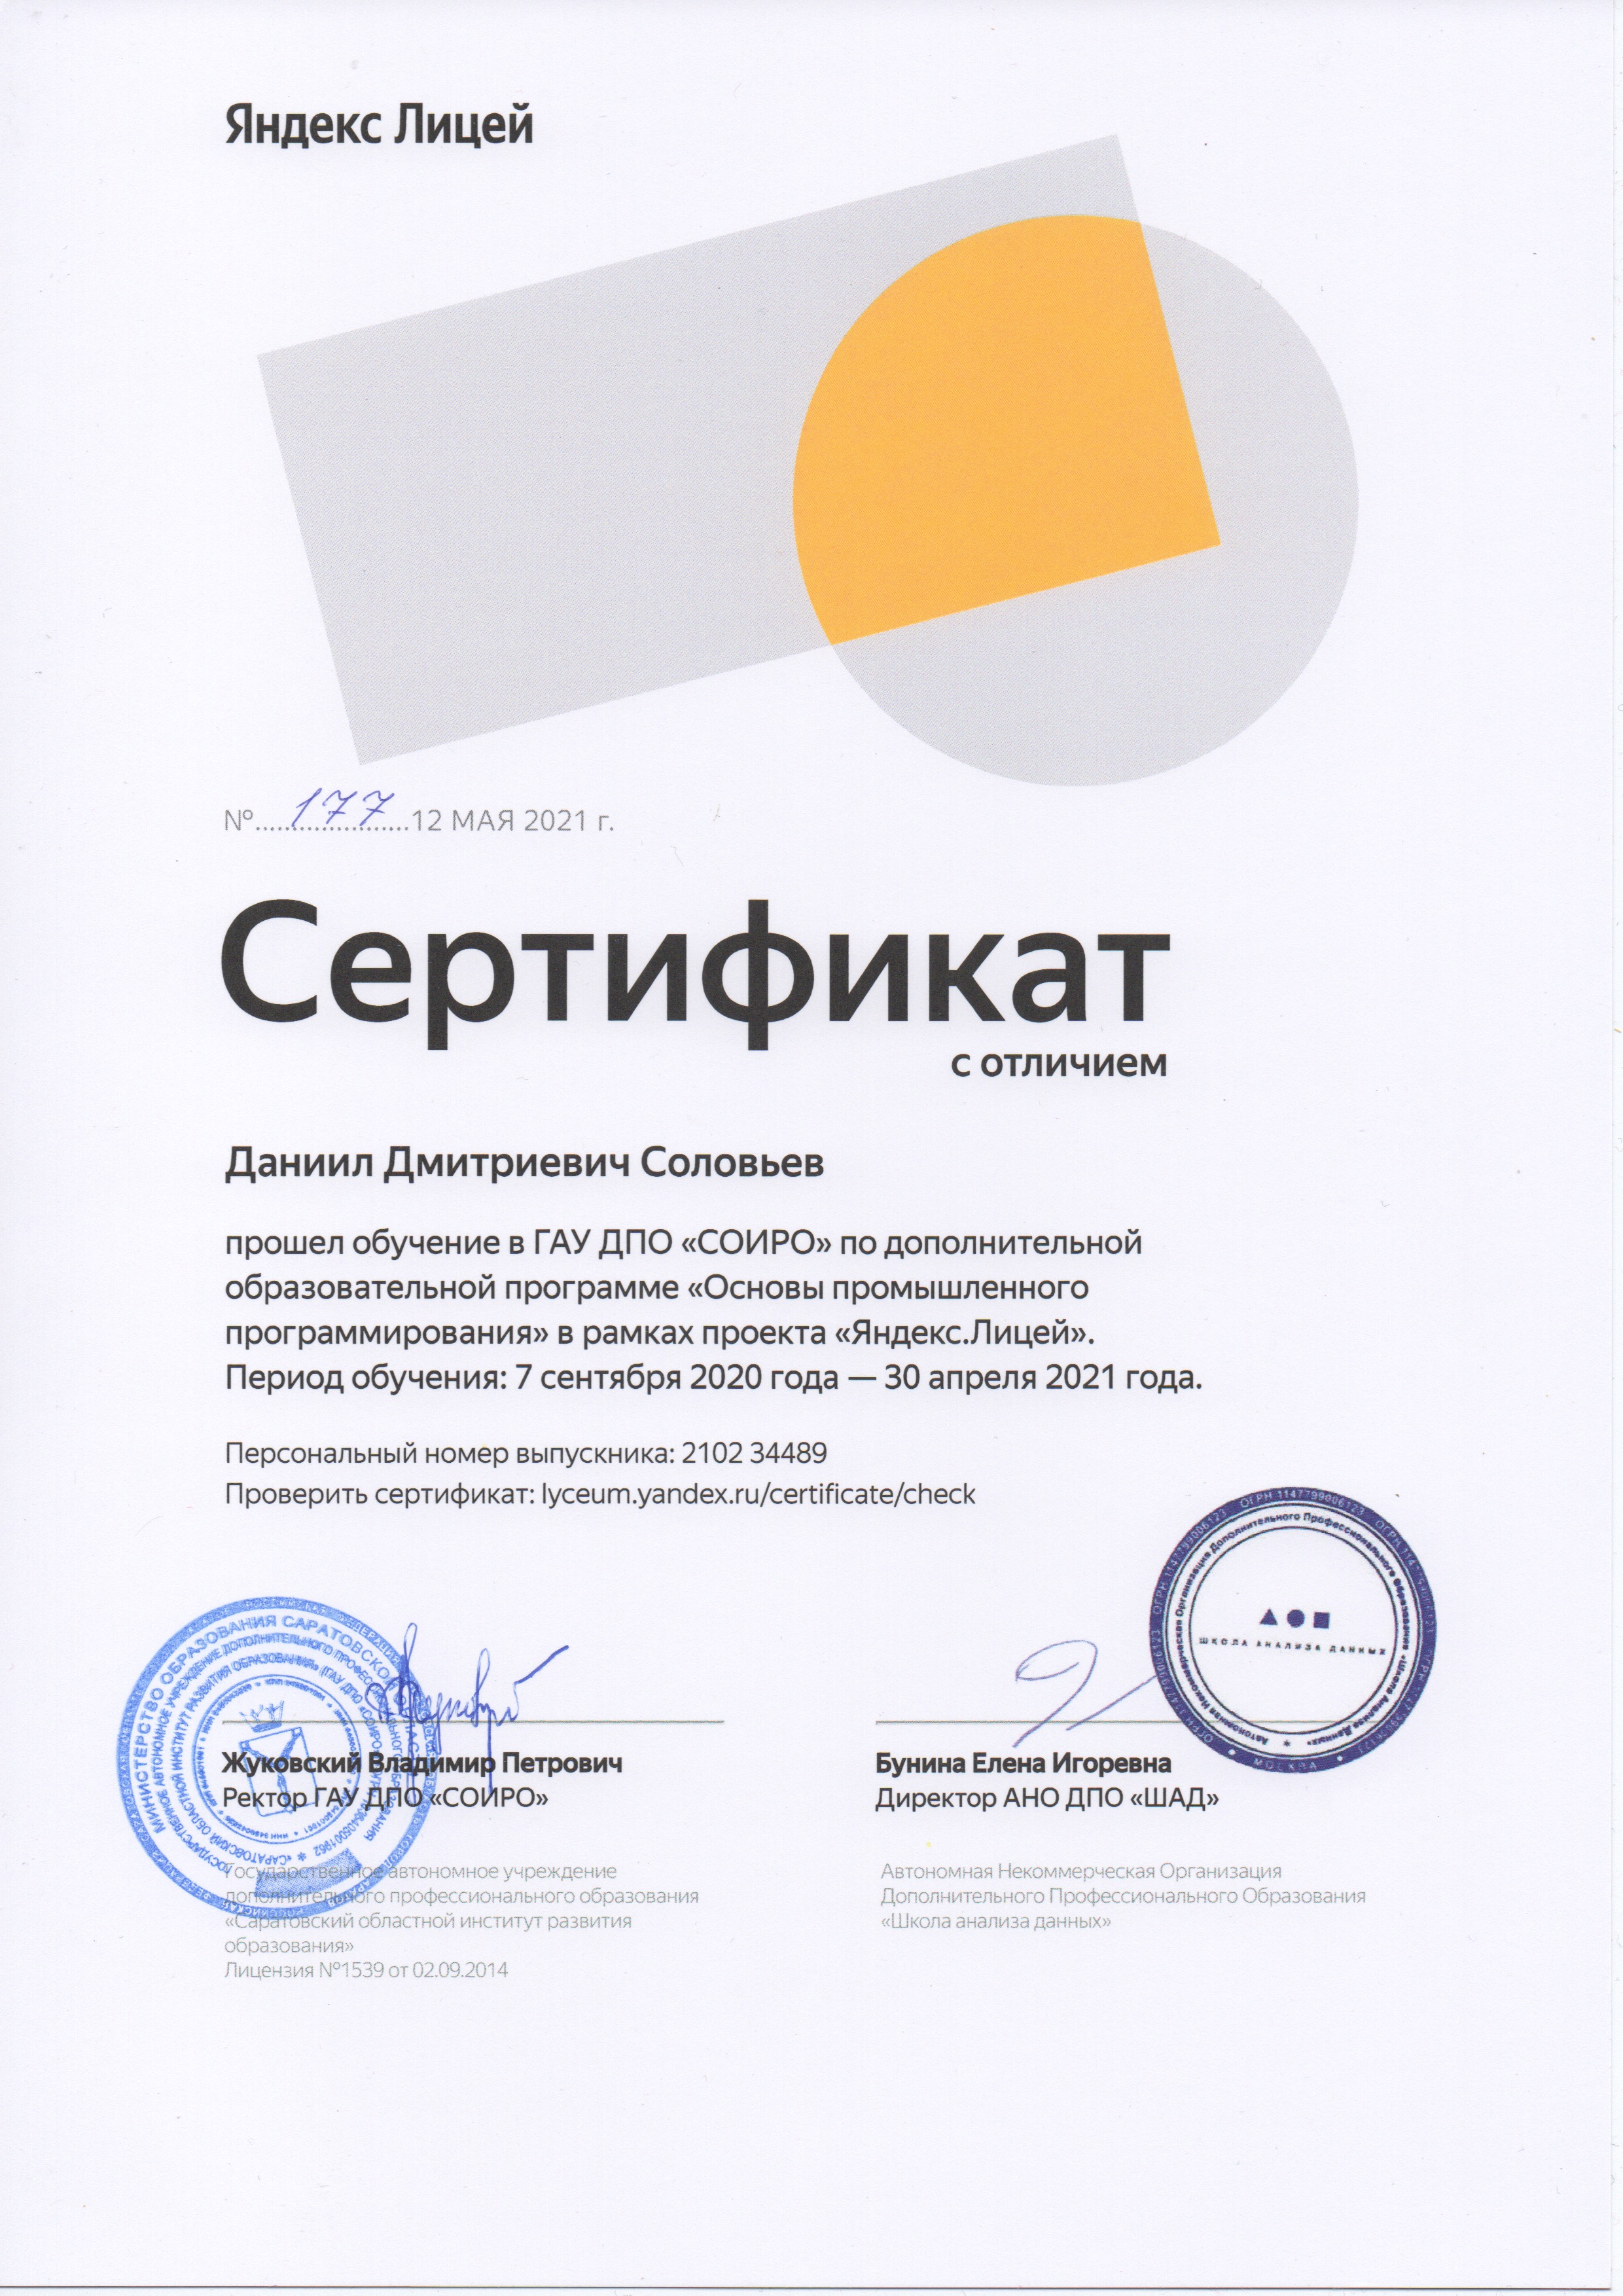 сертификат Яндекс Лицея